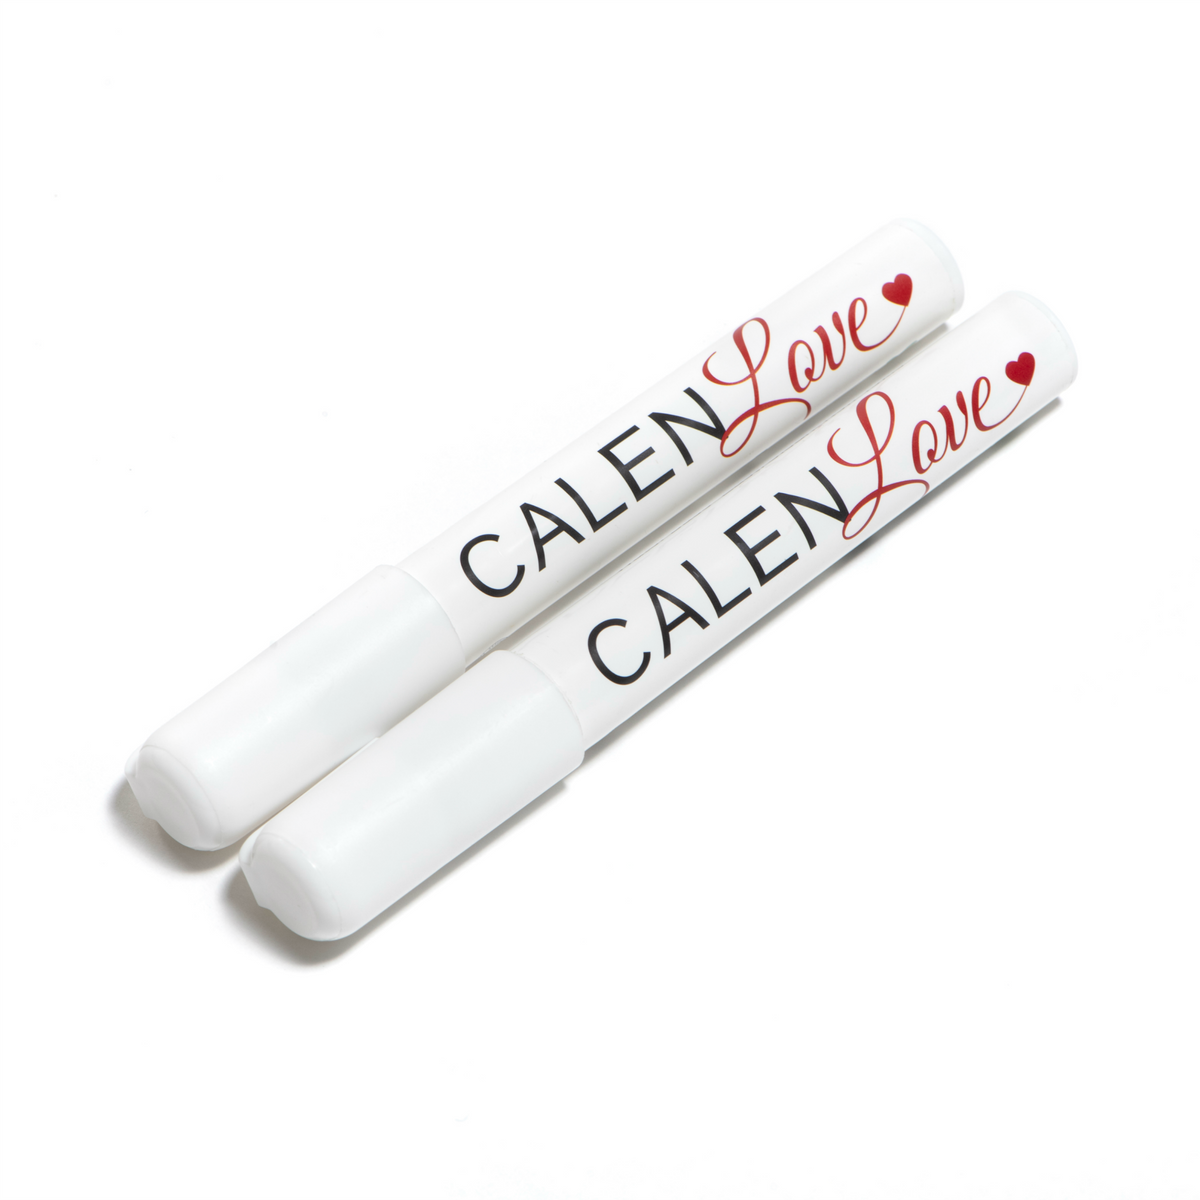 Modern Acrylic Calendar  Calen Love - Calen Love